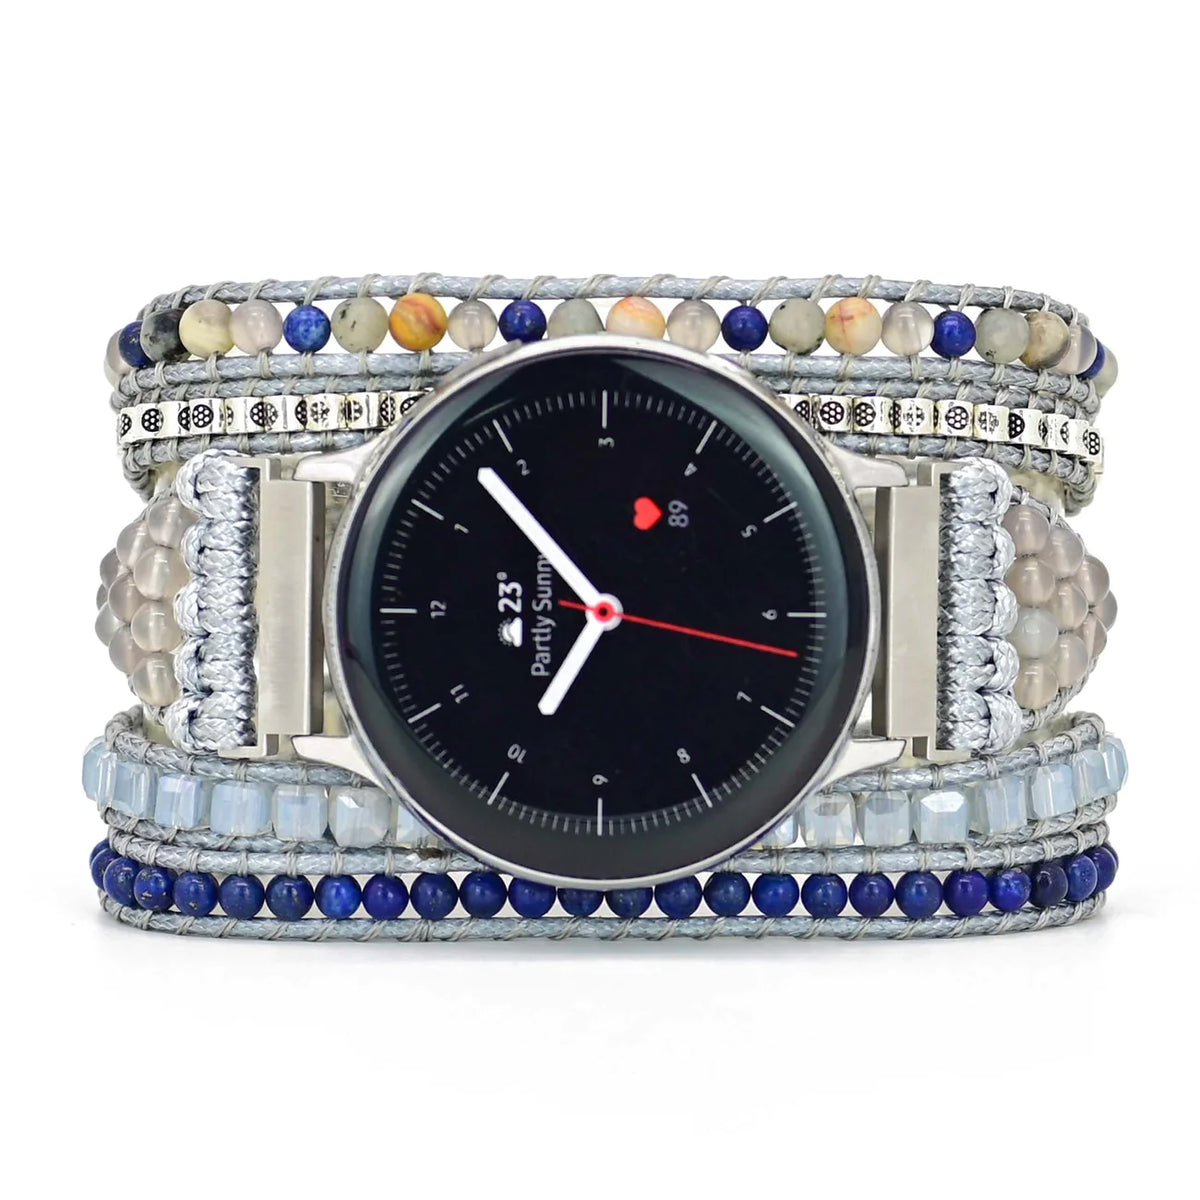 Earth Goddess Watch Bracelet for Samsung Galaxy or Garmin